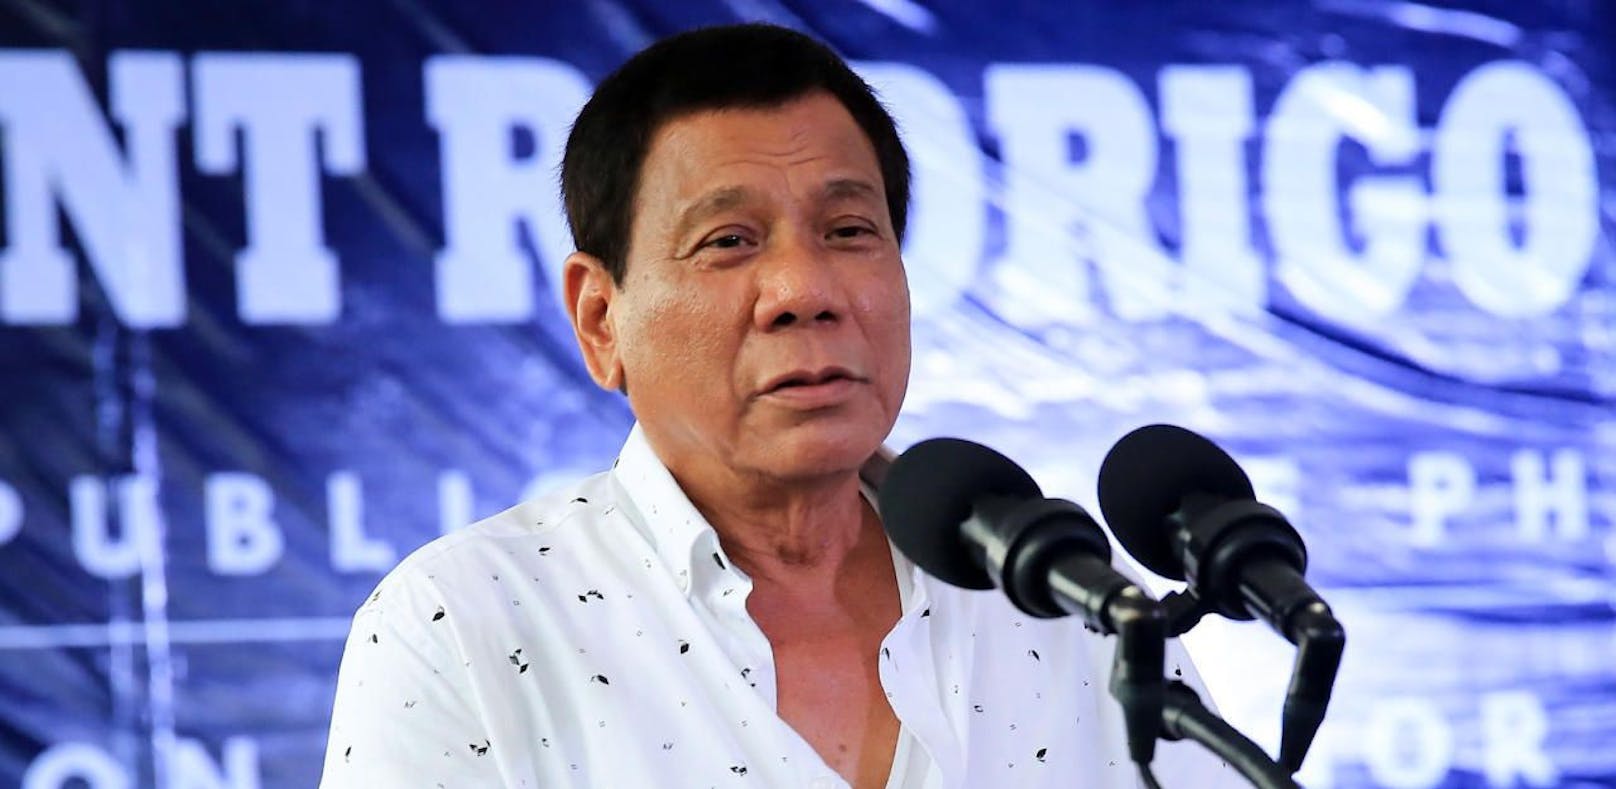 Philippinens Staatschef will 50.000 Dealer töten